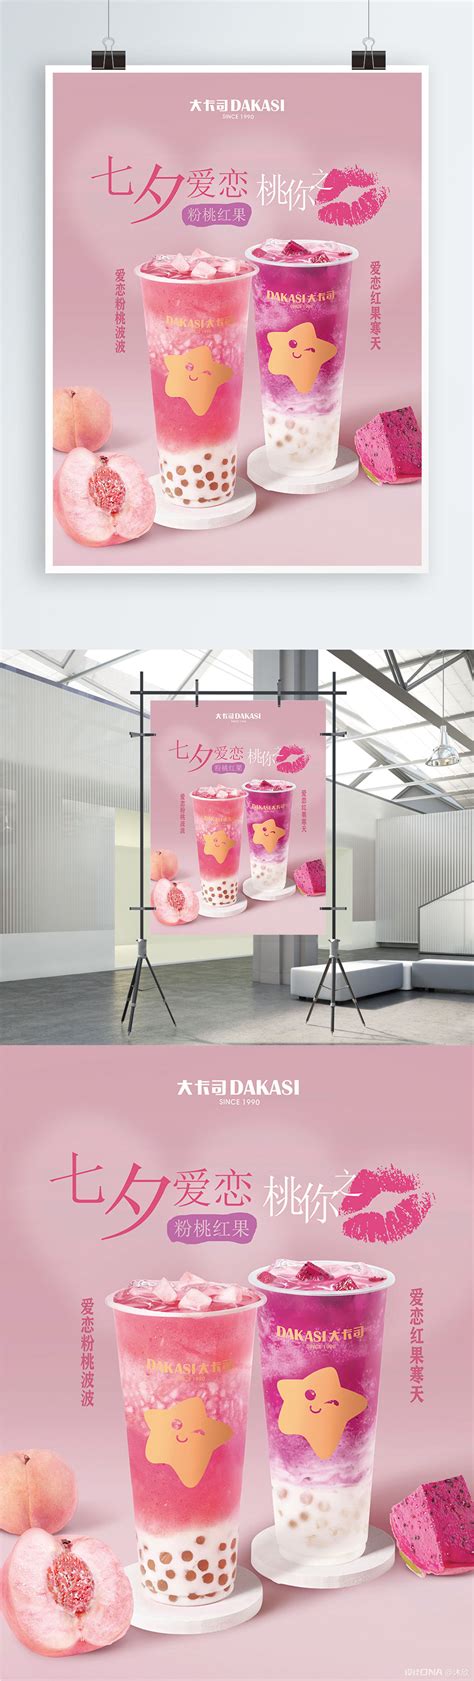 粉色七夕饮品宣传海报宣传品设计作品-设计人才灵活用工-设计DNA